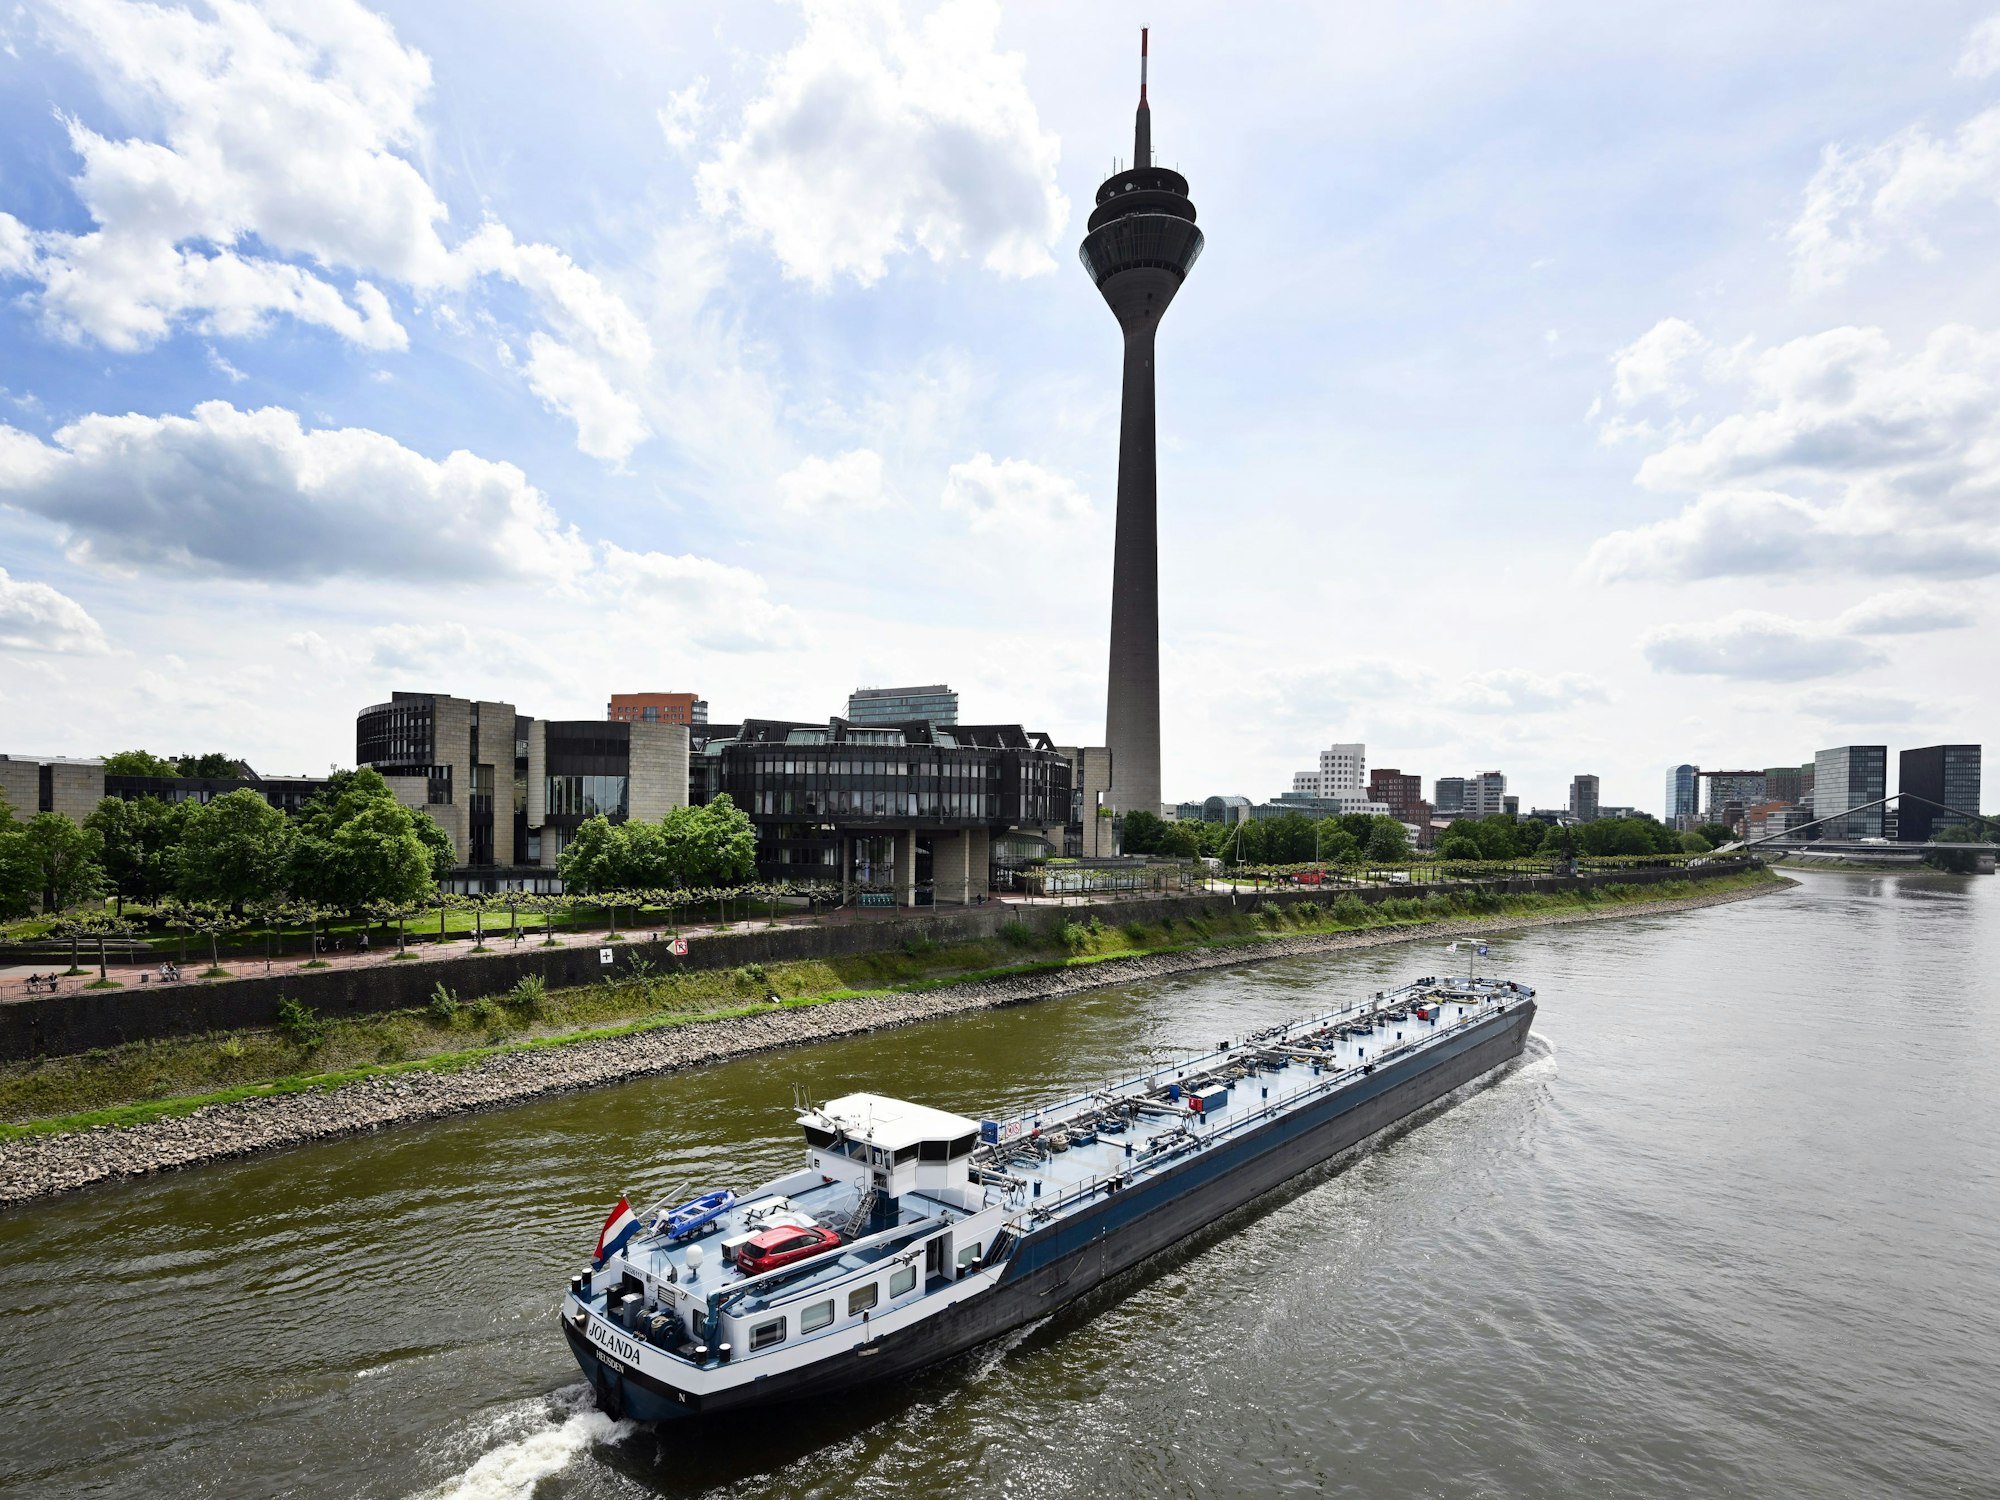 Ein Frachtschiff fährt auf dem Rhein an Düsseldorf vorbei. Im Hintergrund ist der Fernsehturm zu sehen.